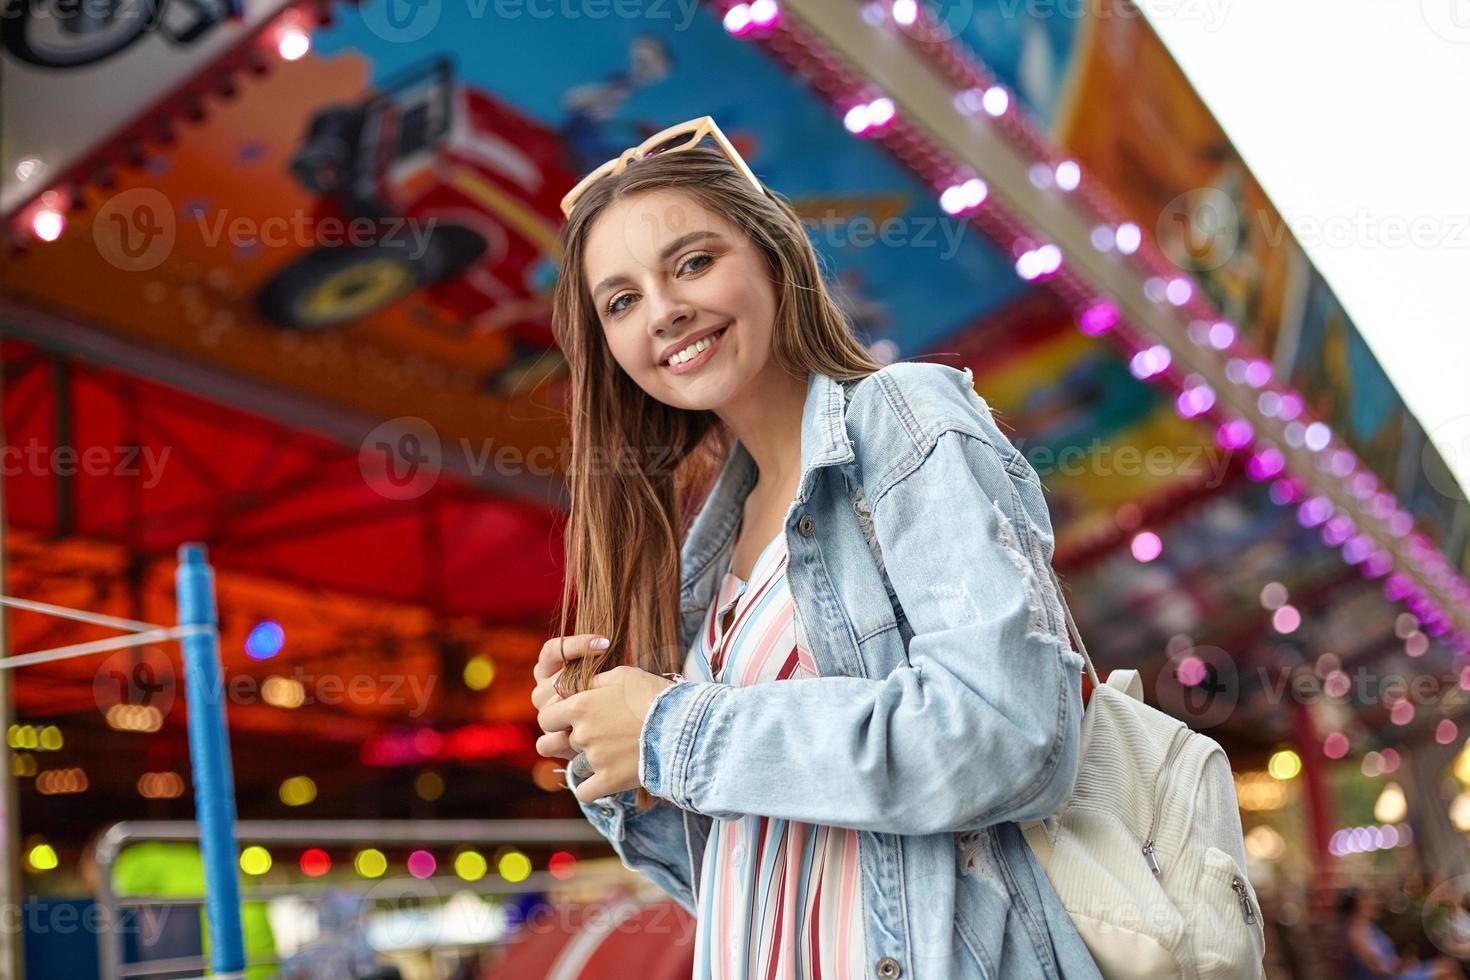 foto ao ar livre de uma jovem bonita positiva com longos cabelos castanhos, olhando para a câmera com um sorriso sincero, vestindo mochila branca, casaco jeans da moda e vestido leve de verão